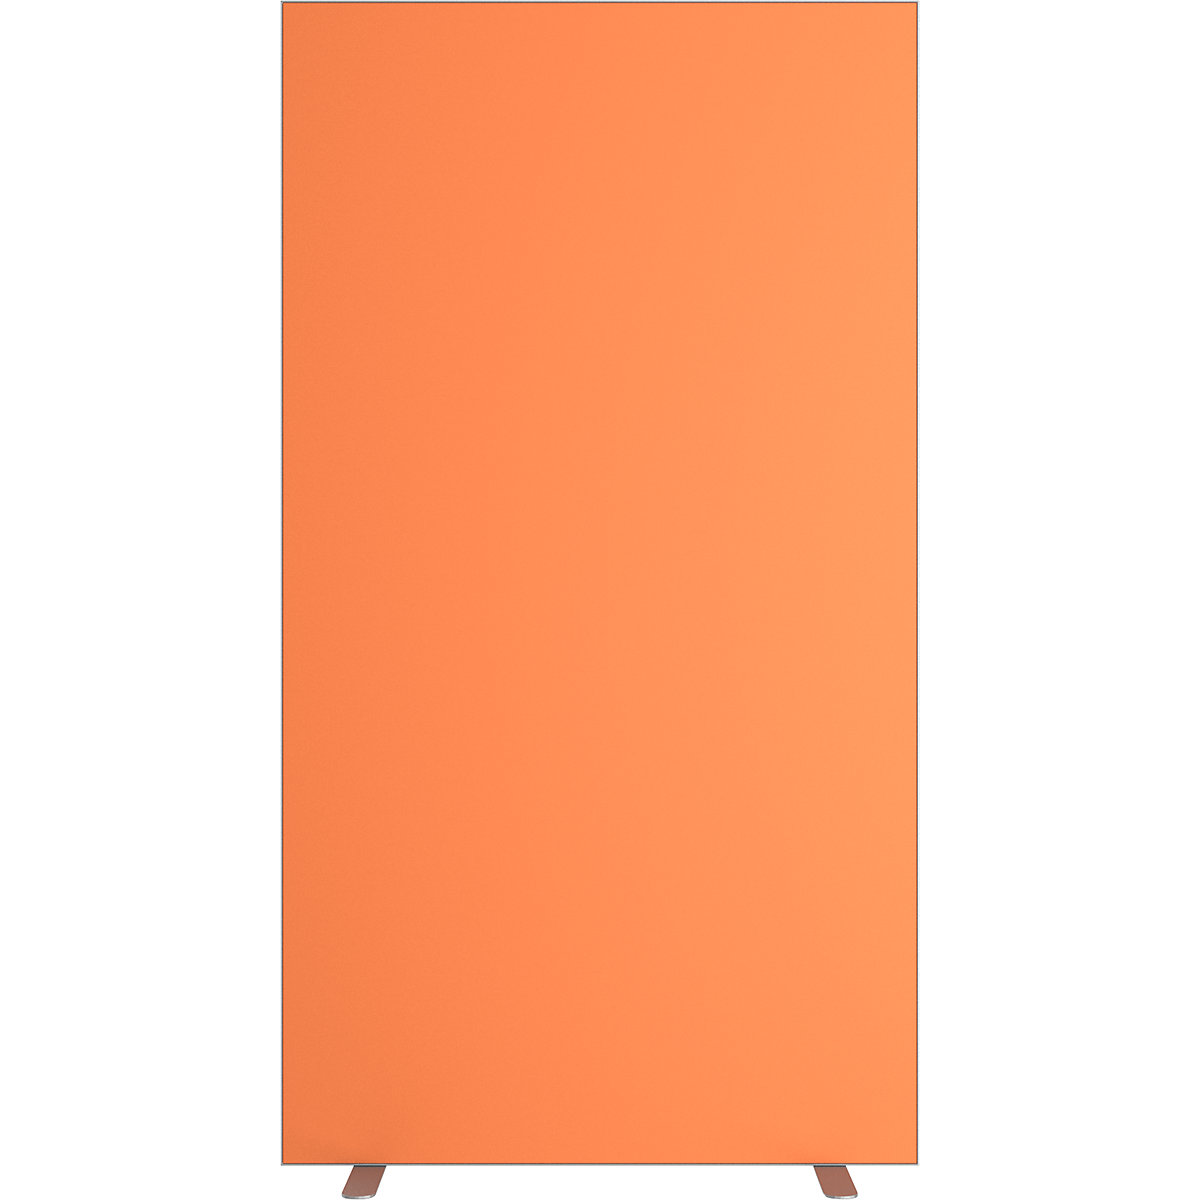 Trennwand easyScreen, einfarbig, mit Schallschutz, orange, Breite 940 mm-11